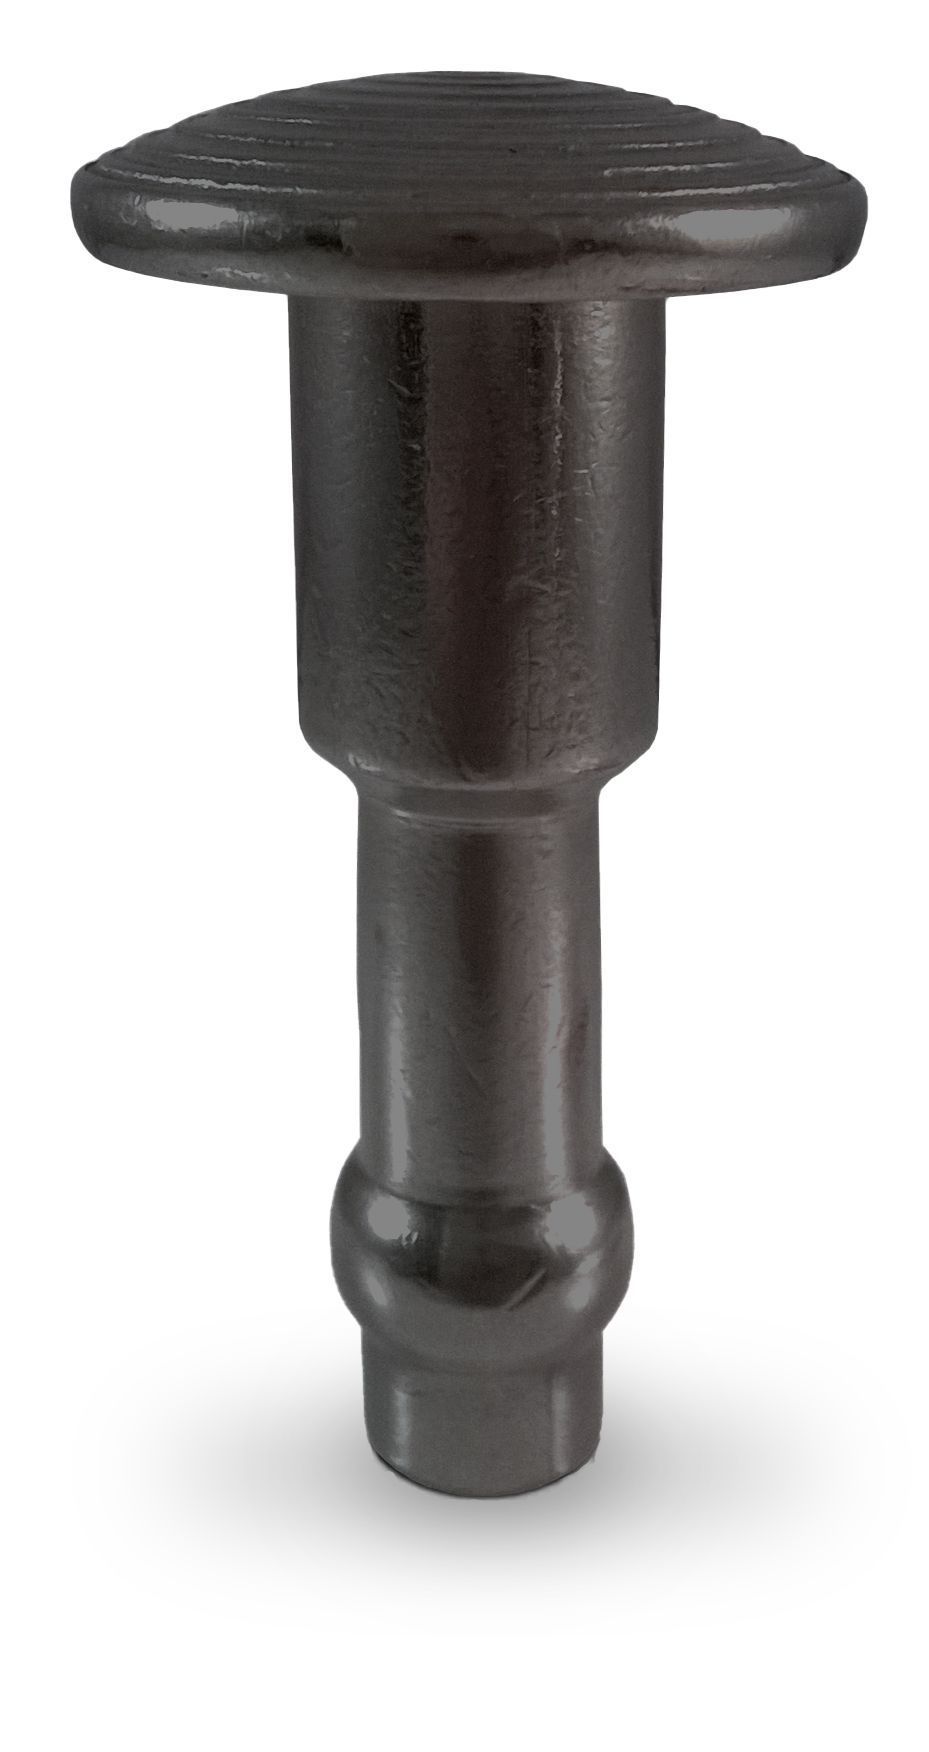 Clou podotactile special enrobe en acier zingue noir (ff)_0